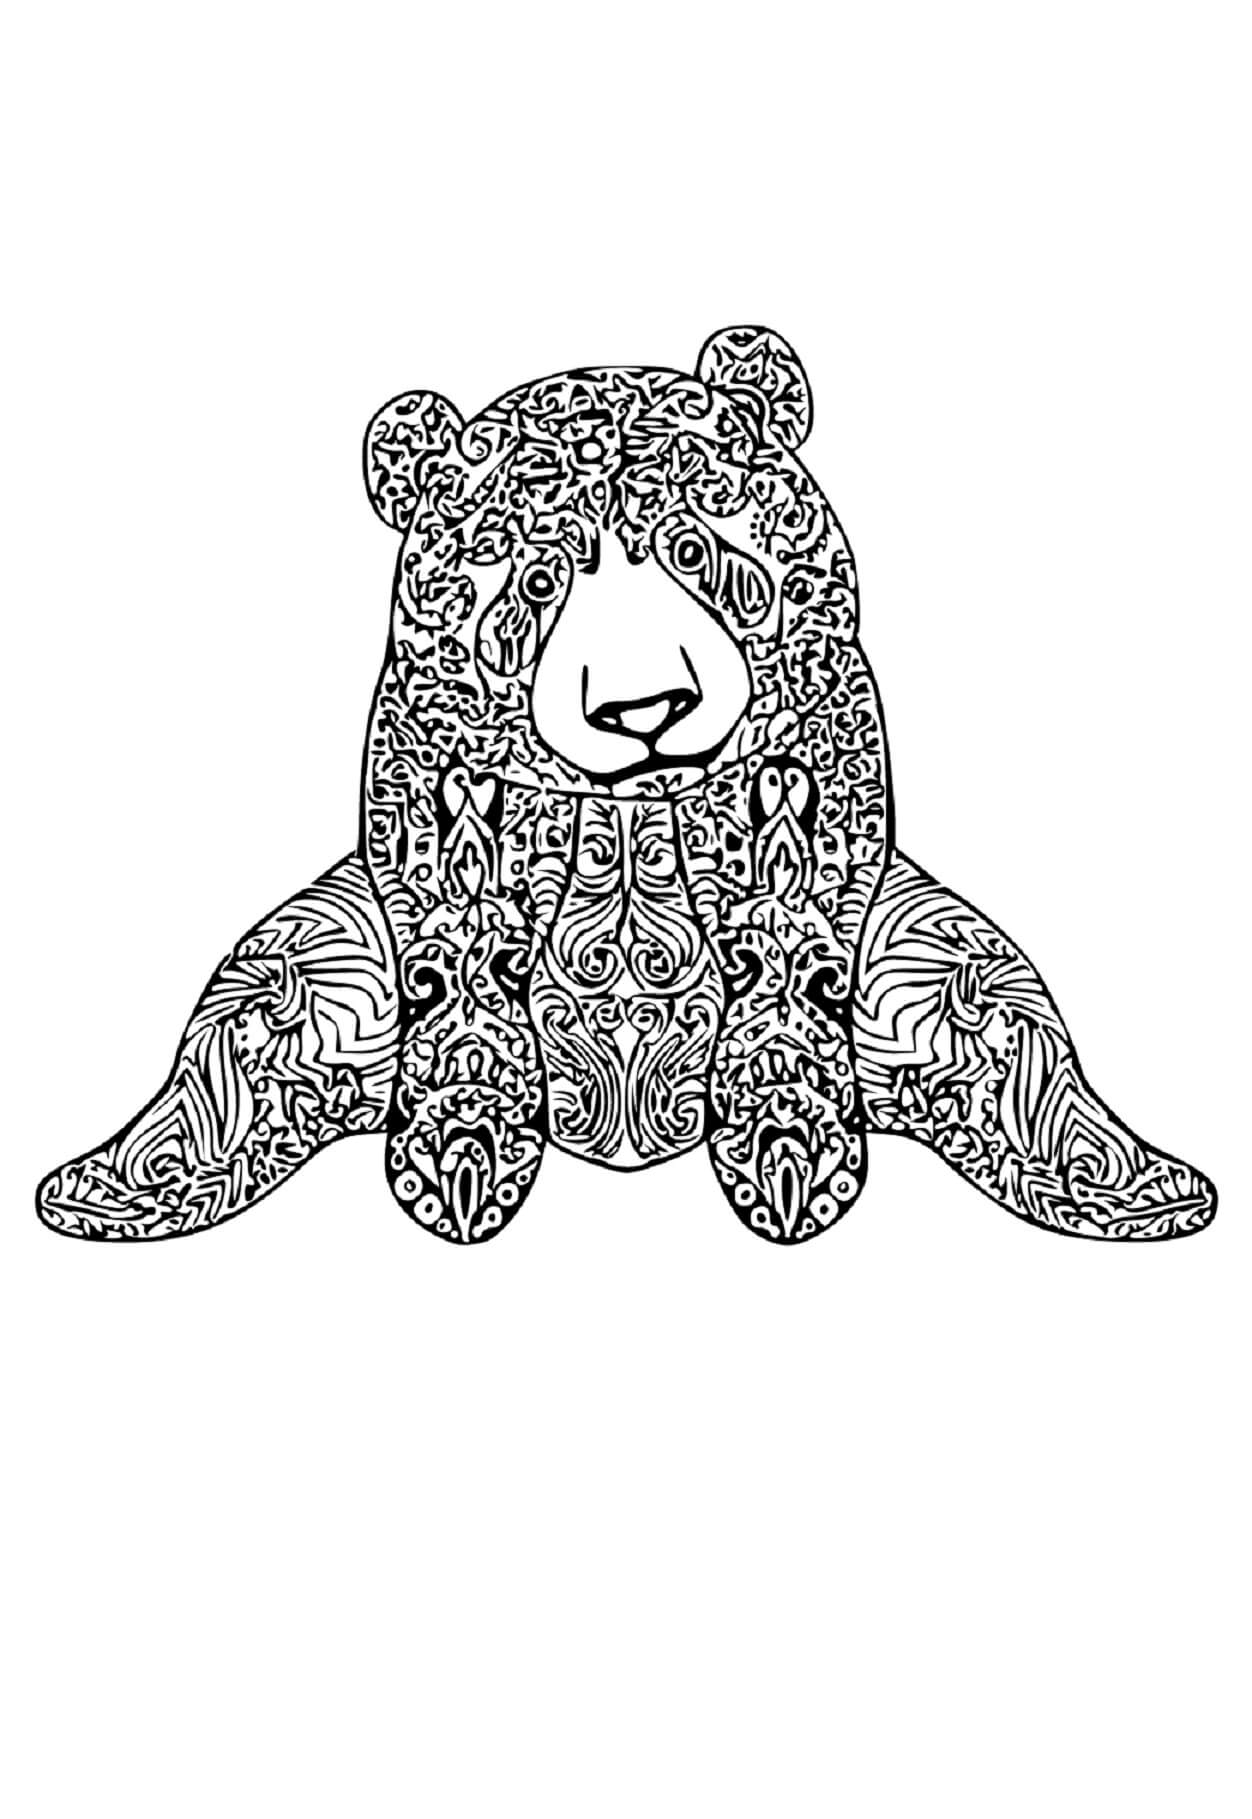 Mandala Bear Coloring Page - Sheet 3 Mandalas